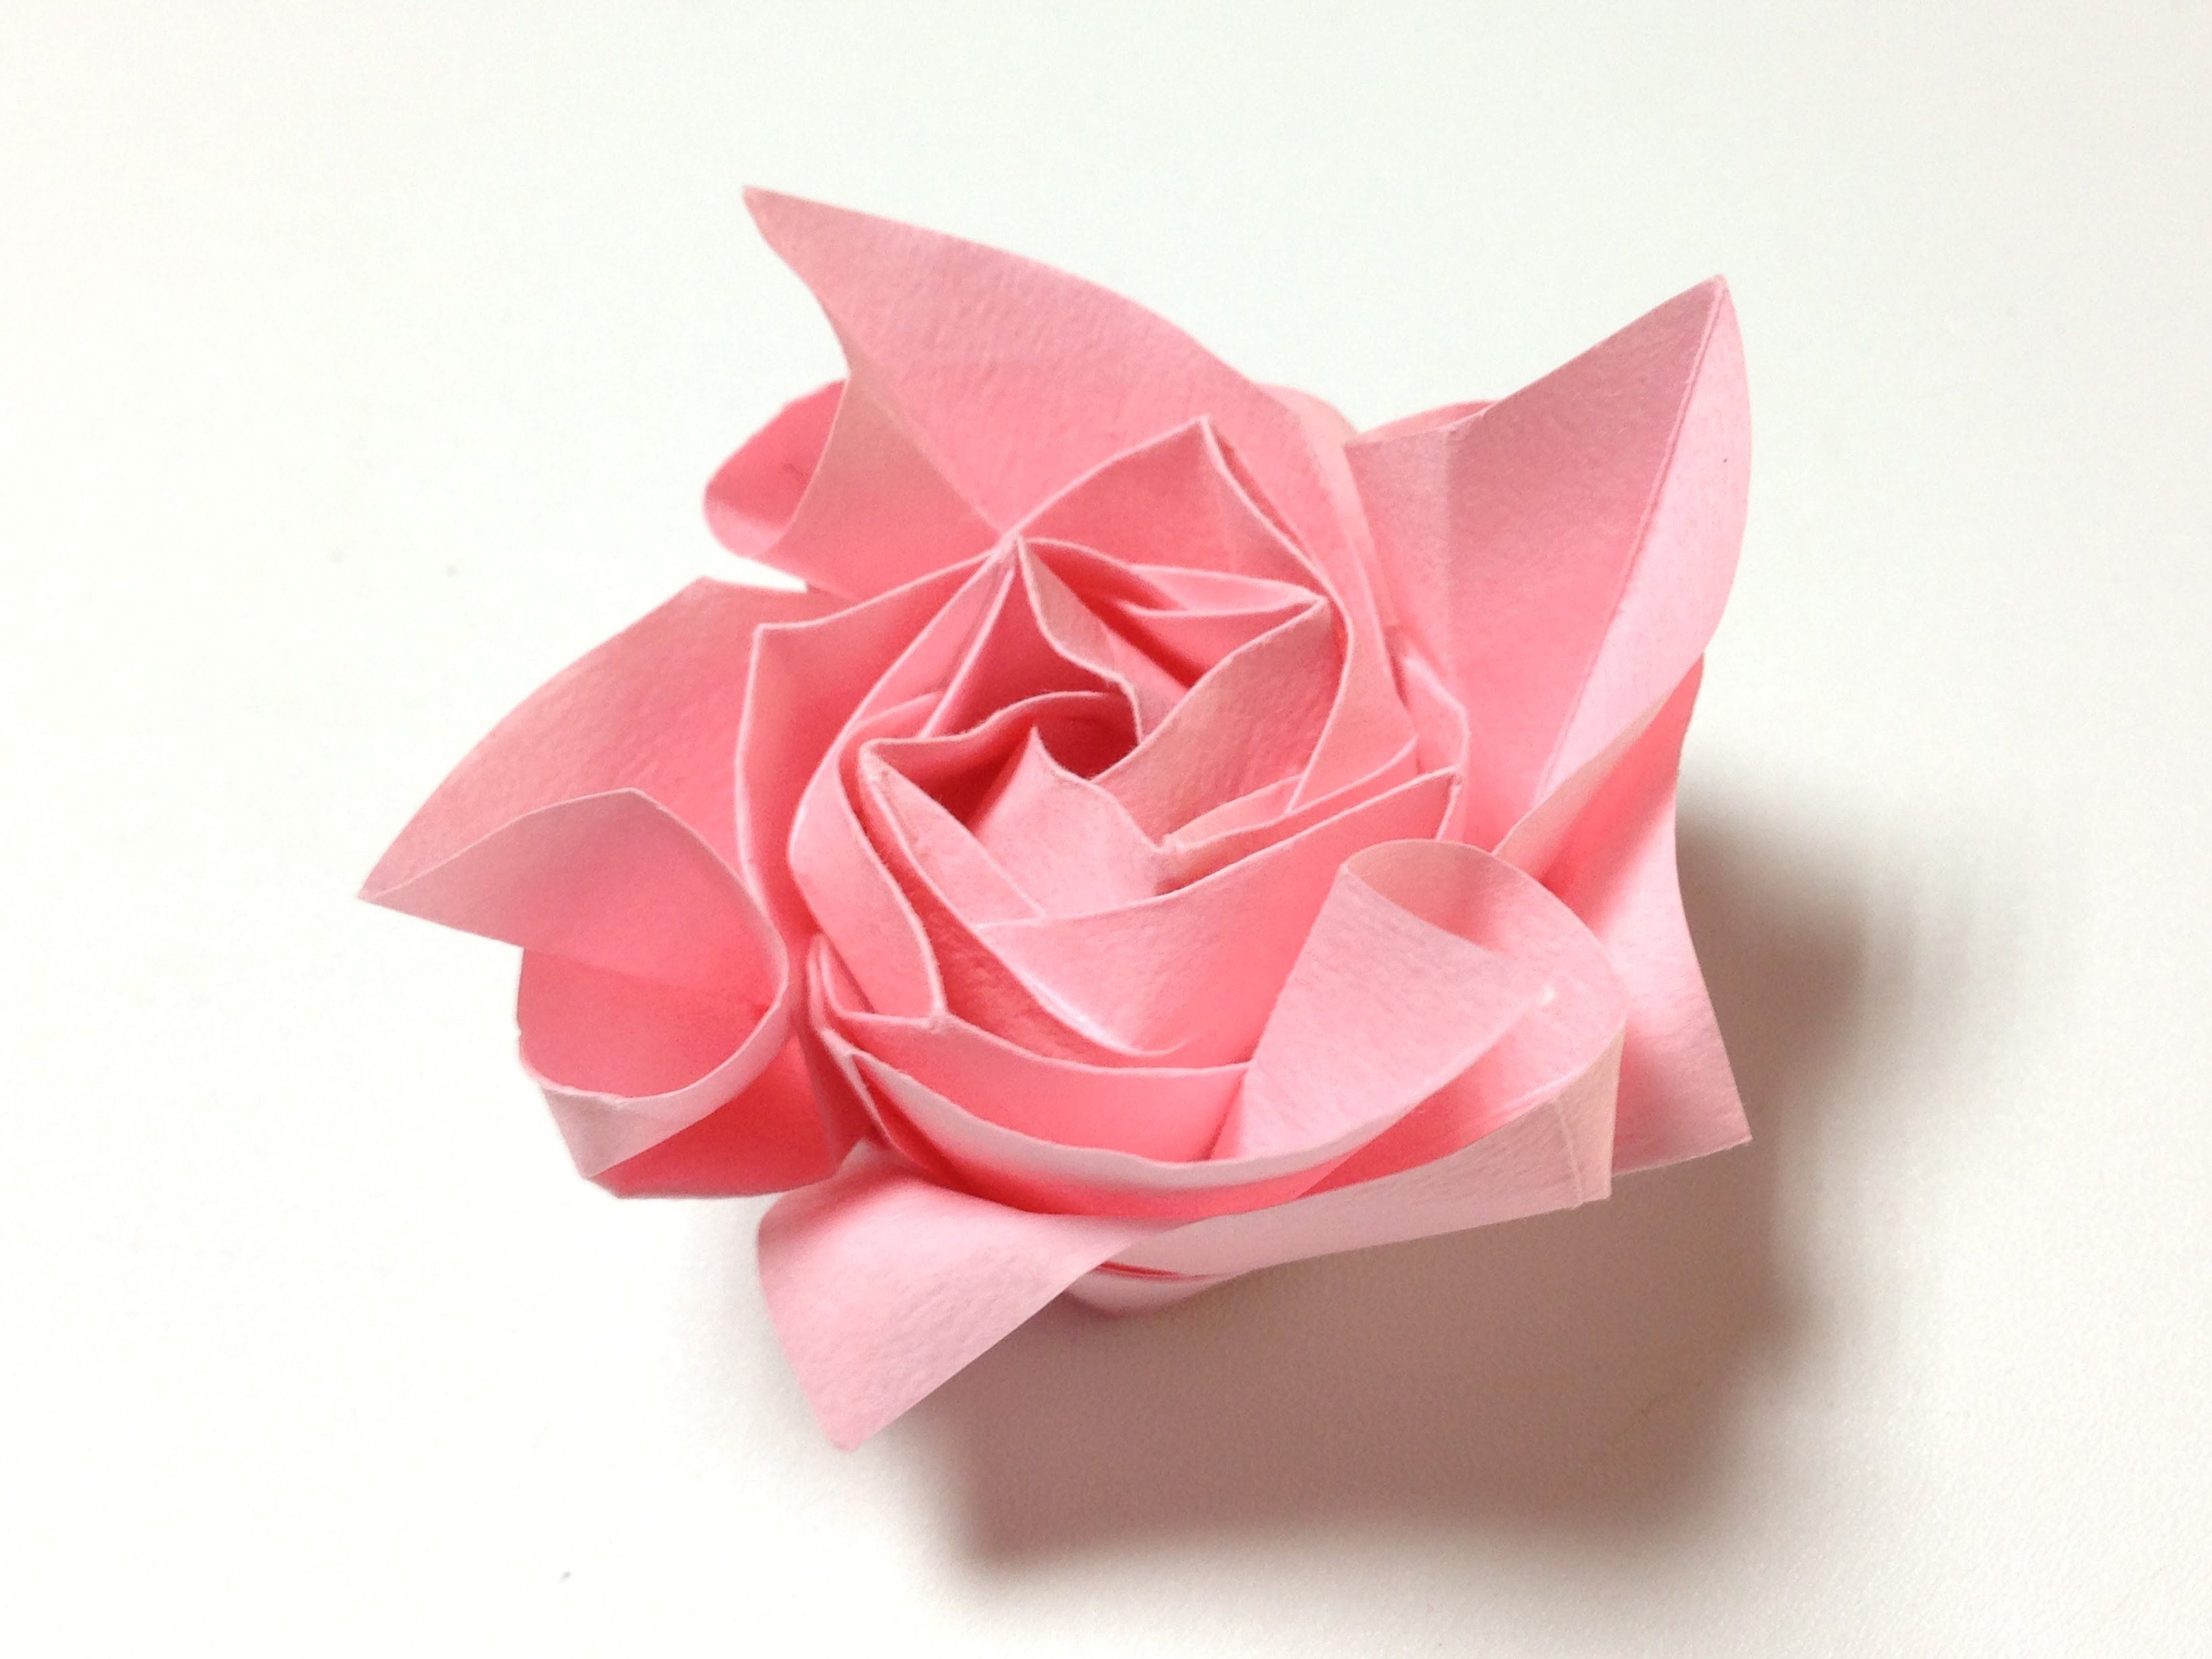 Rose Papercraft éäººæãã ãã©ã æãç´ 36 Ly One origami Rose 36